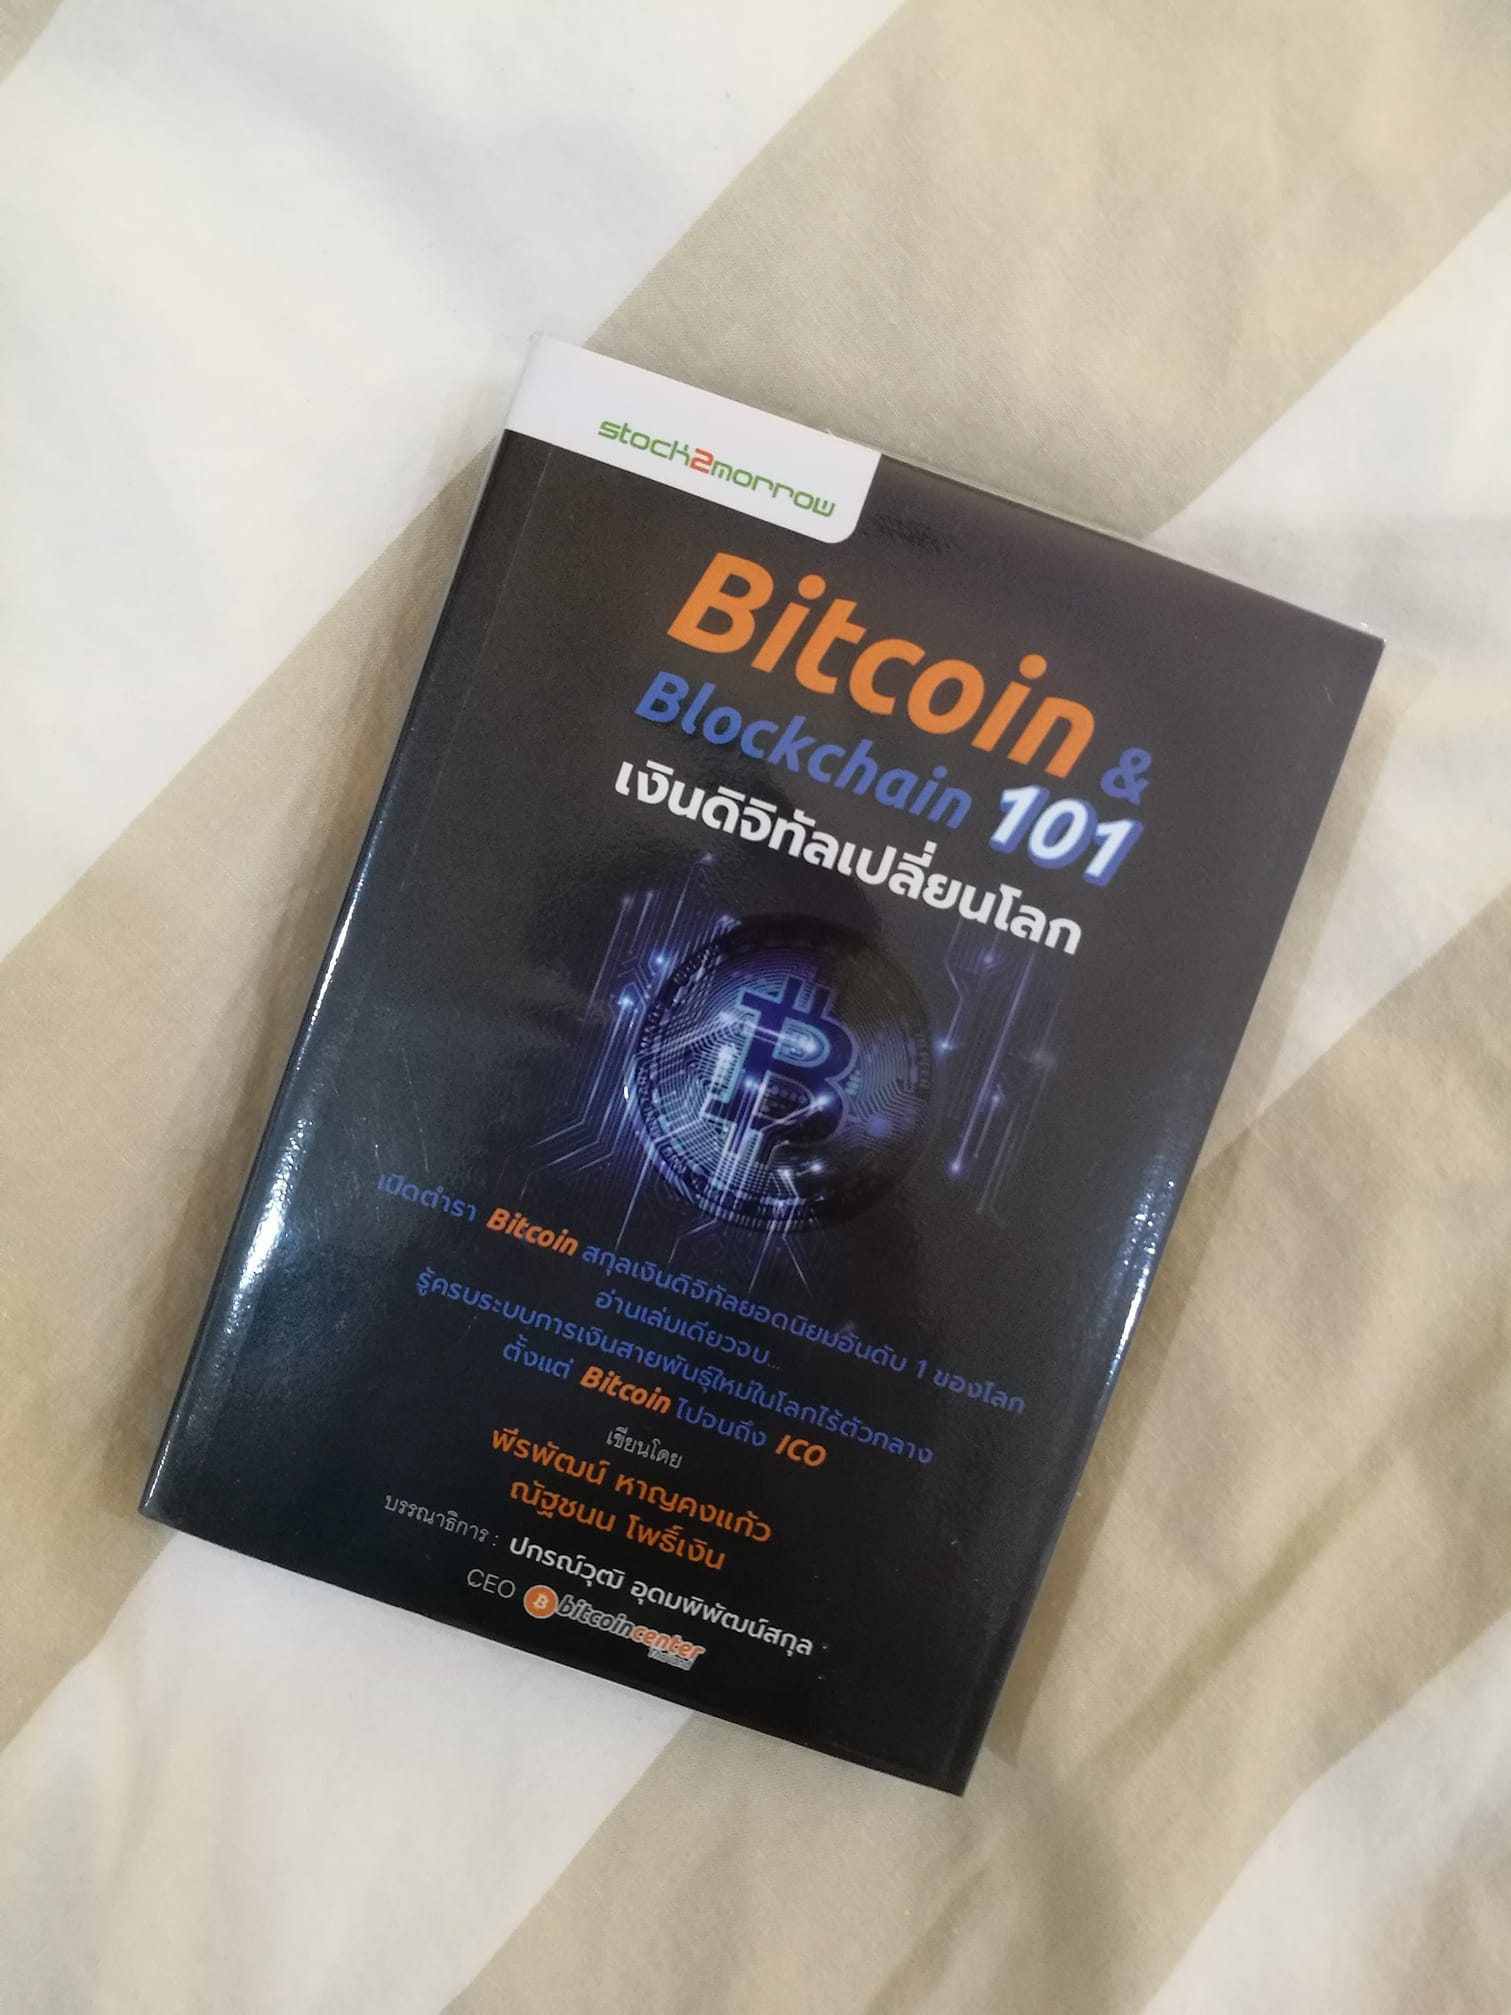 Bitcoin and Blockchain 101